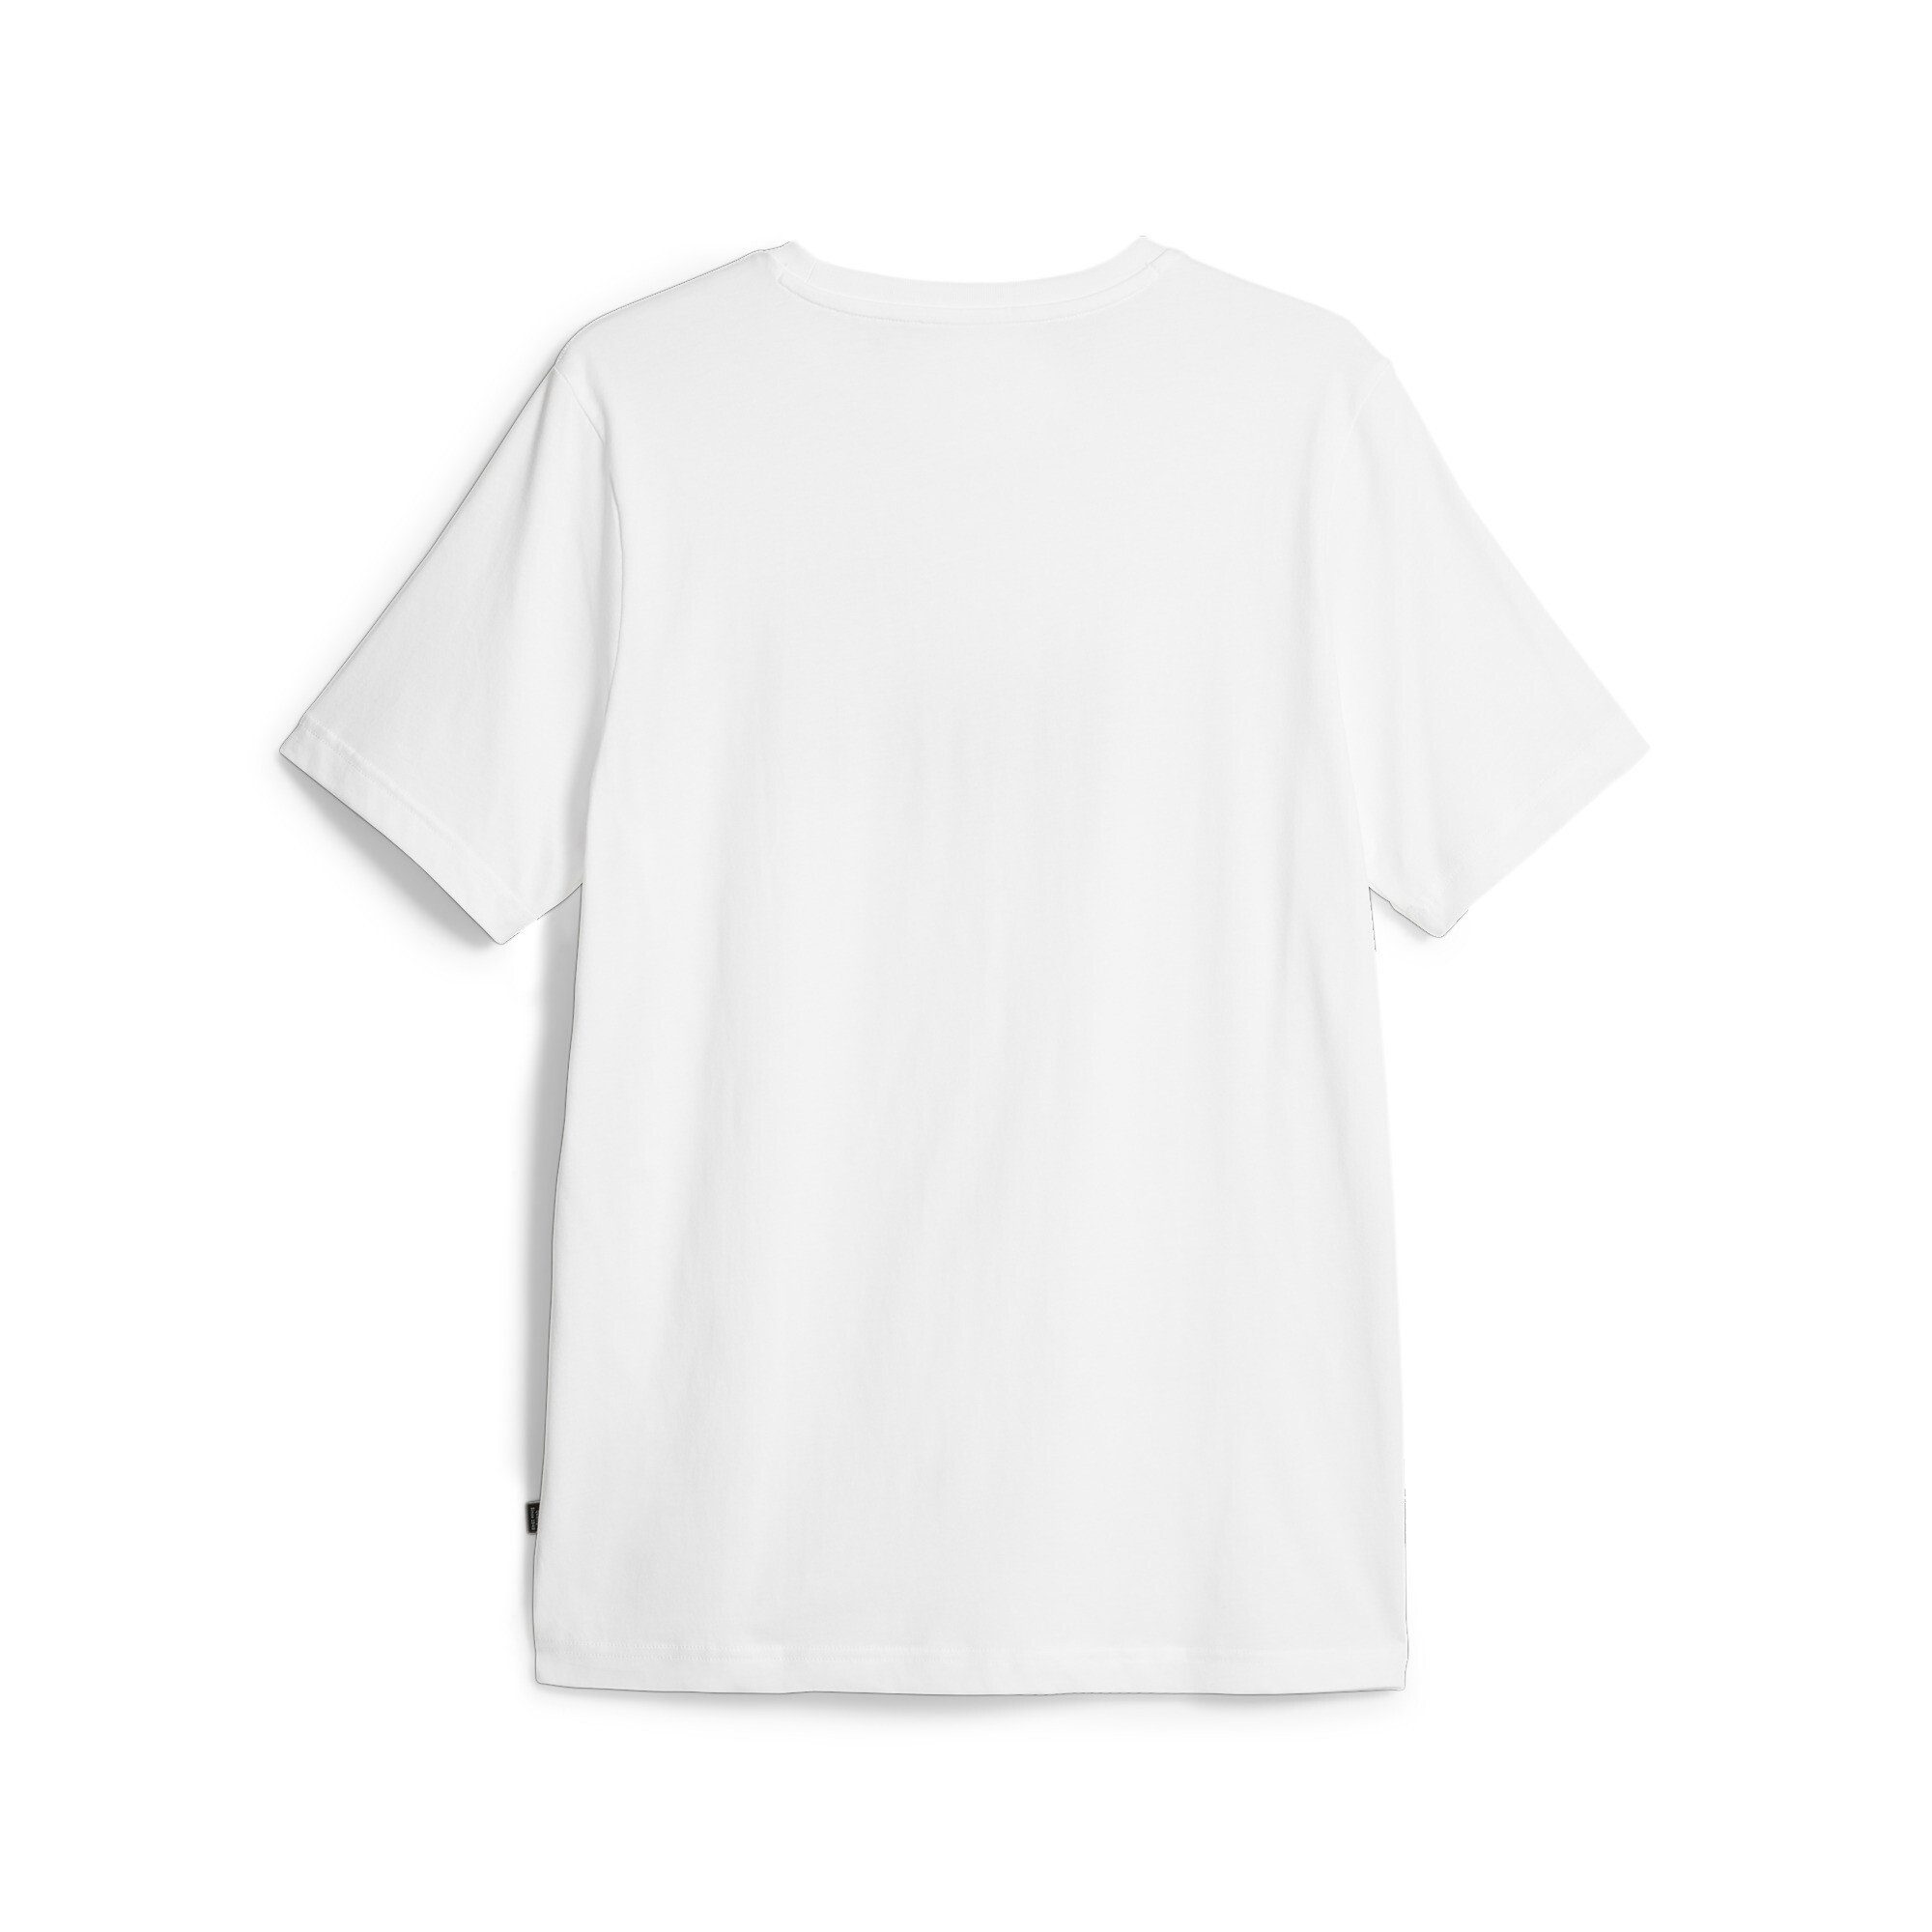 PUMA T-Shirt NO. PUMA CELEBRATION TEE White 1 LOGO